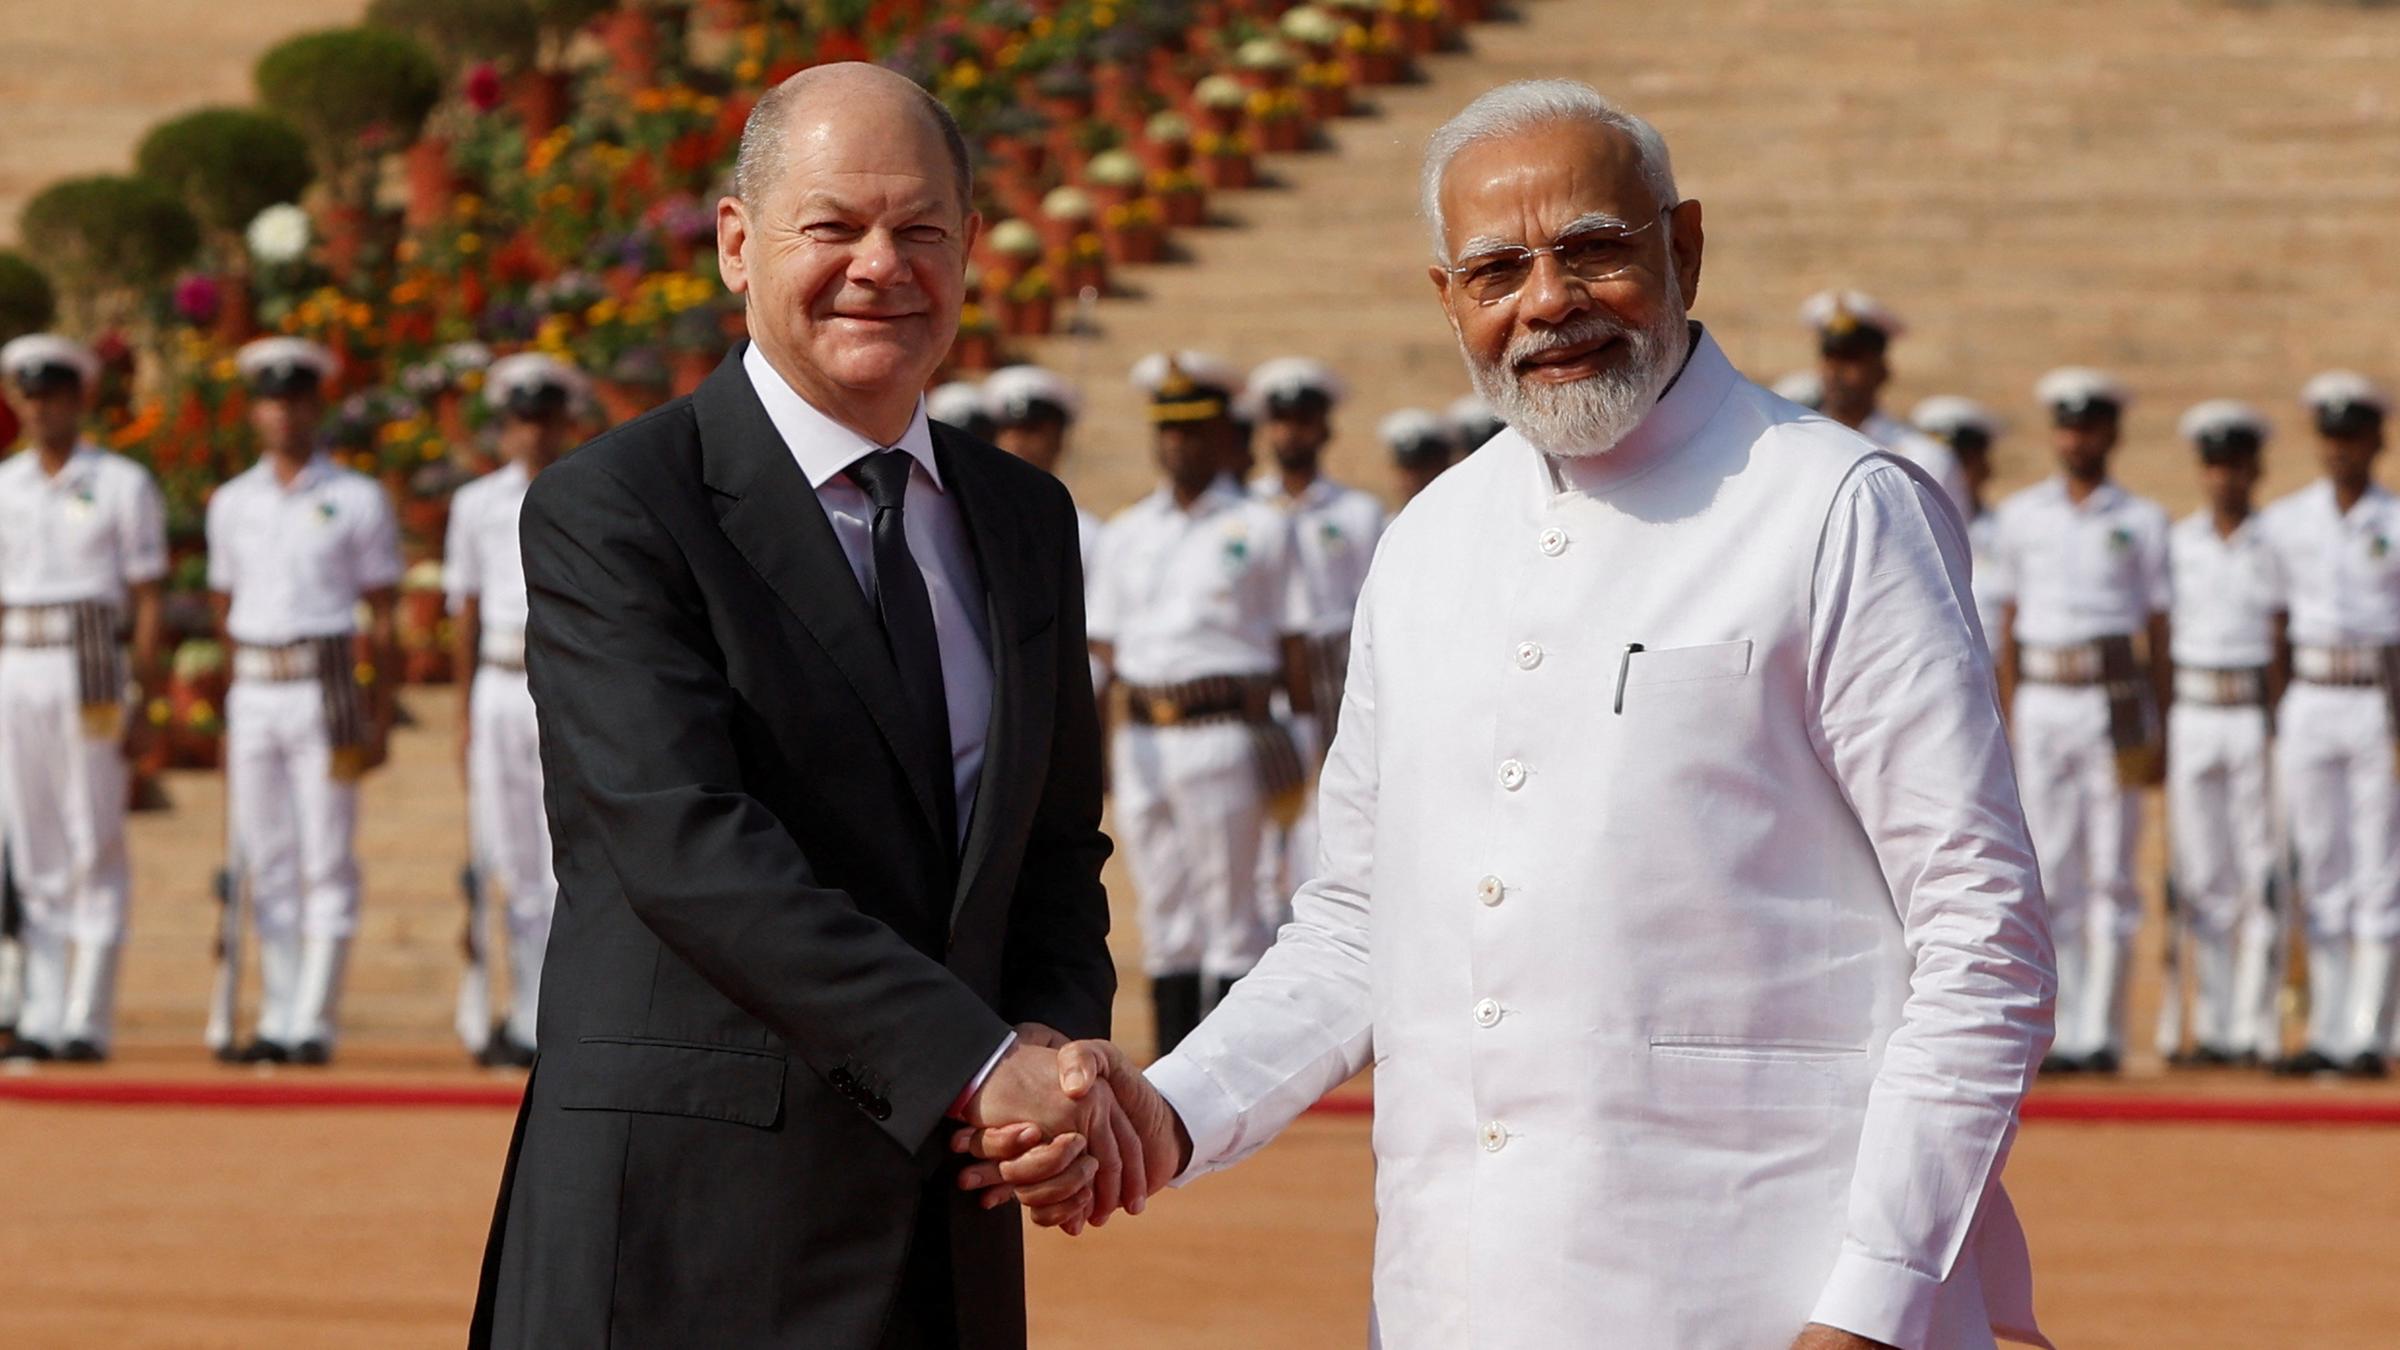 Der Bundeskanzler Olaf Scholz schüttelt die Hand des indischen Premierministers Narendra Modi in Neu Delhi.